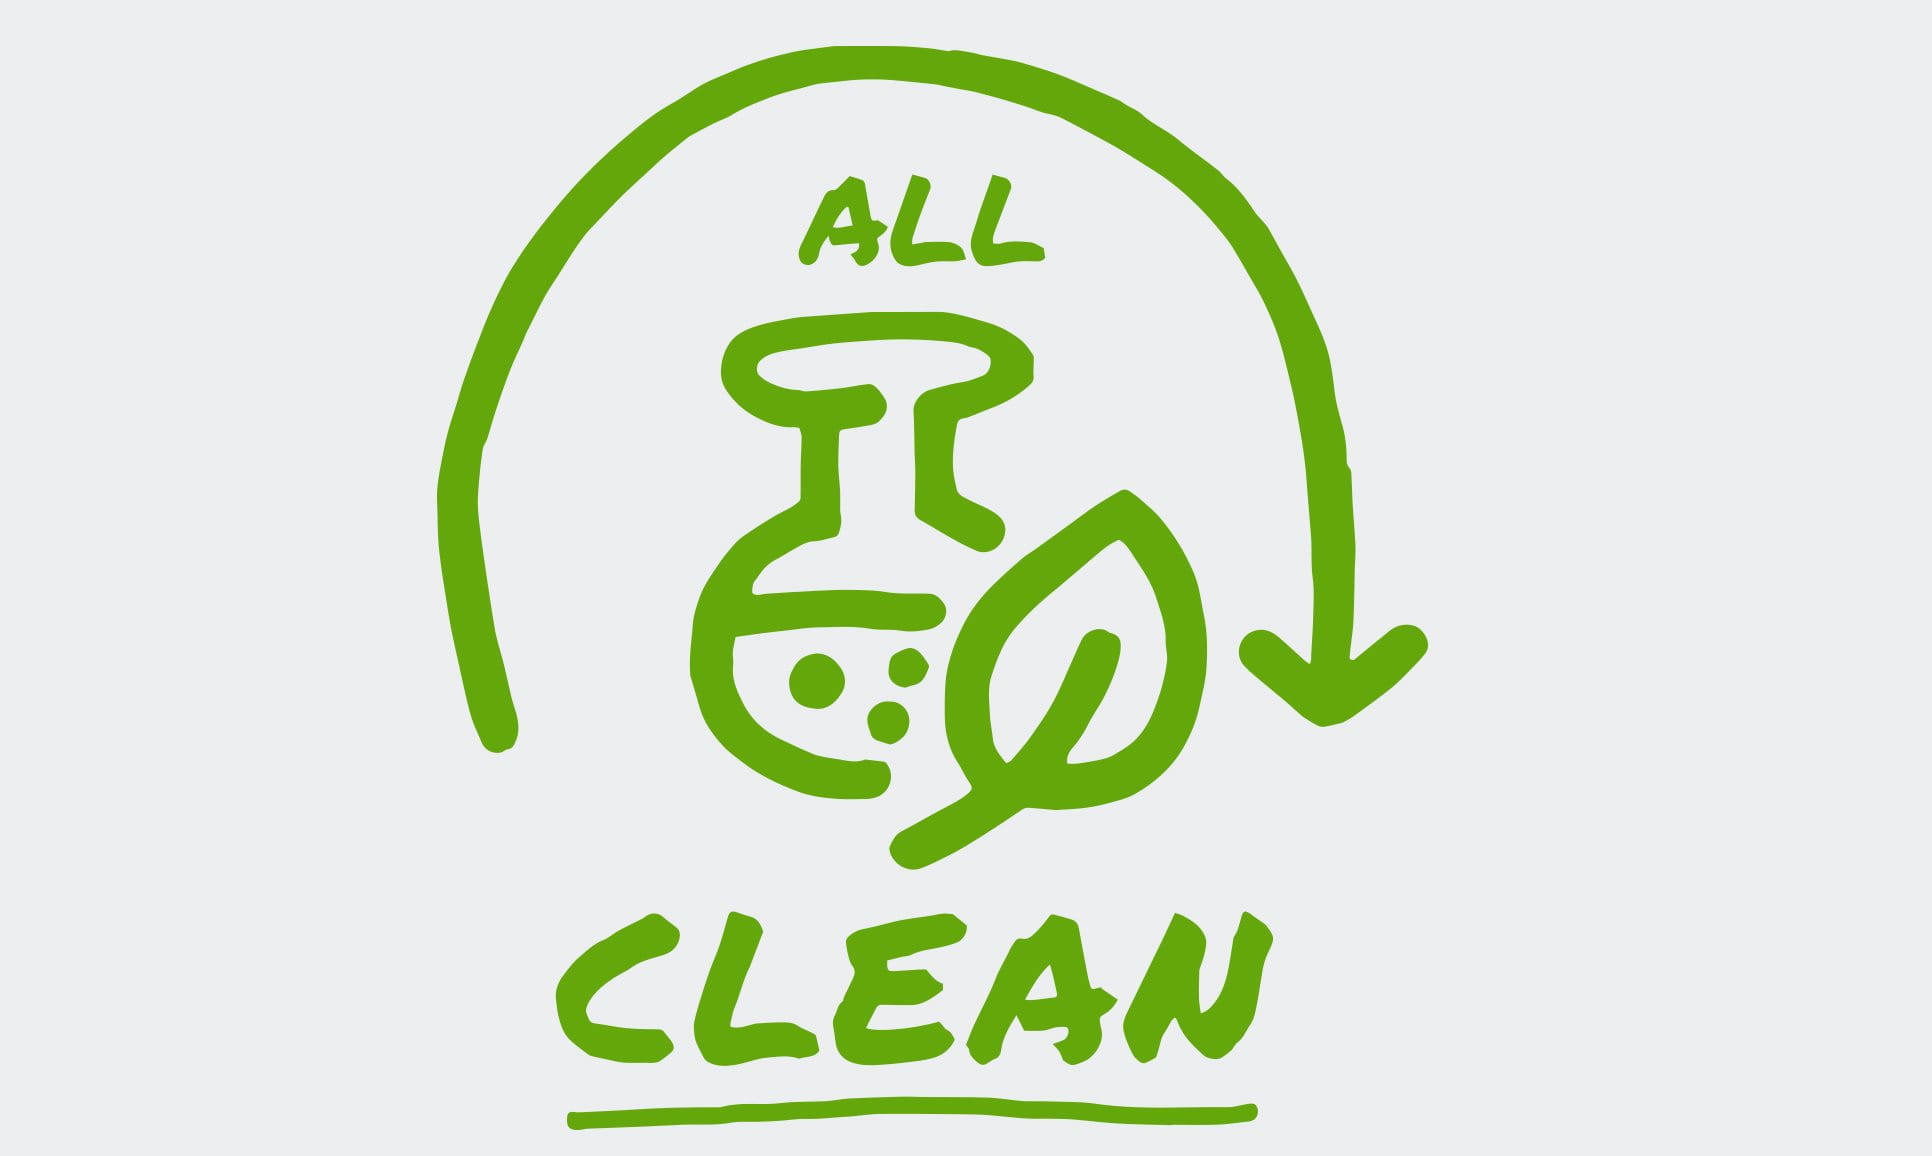 Une icône illustrée montre une flèche qui forme un demi-cercle autour des mots « All Clean », apparaissant à côté d’une feuille et d’un bécher.